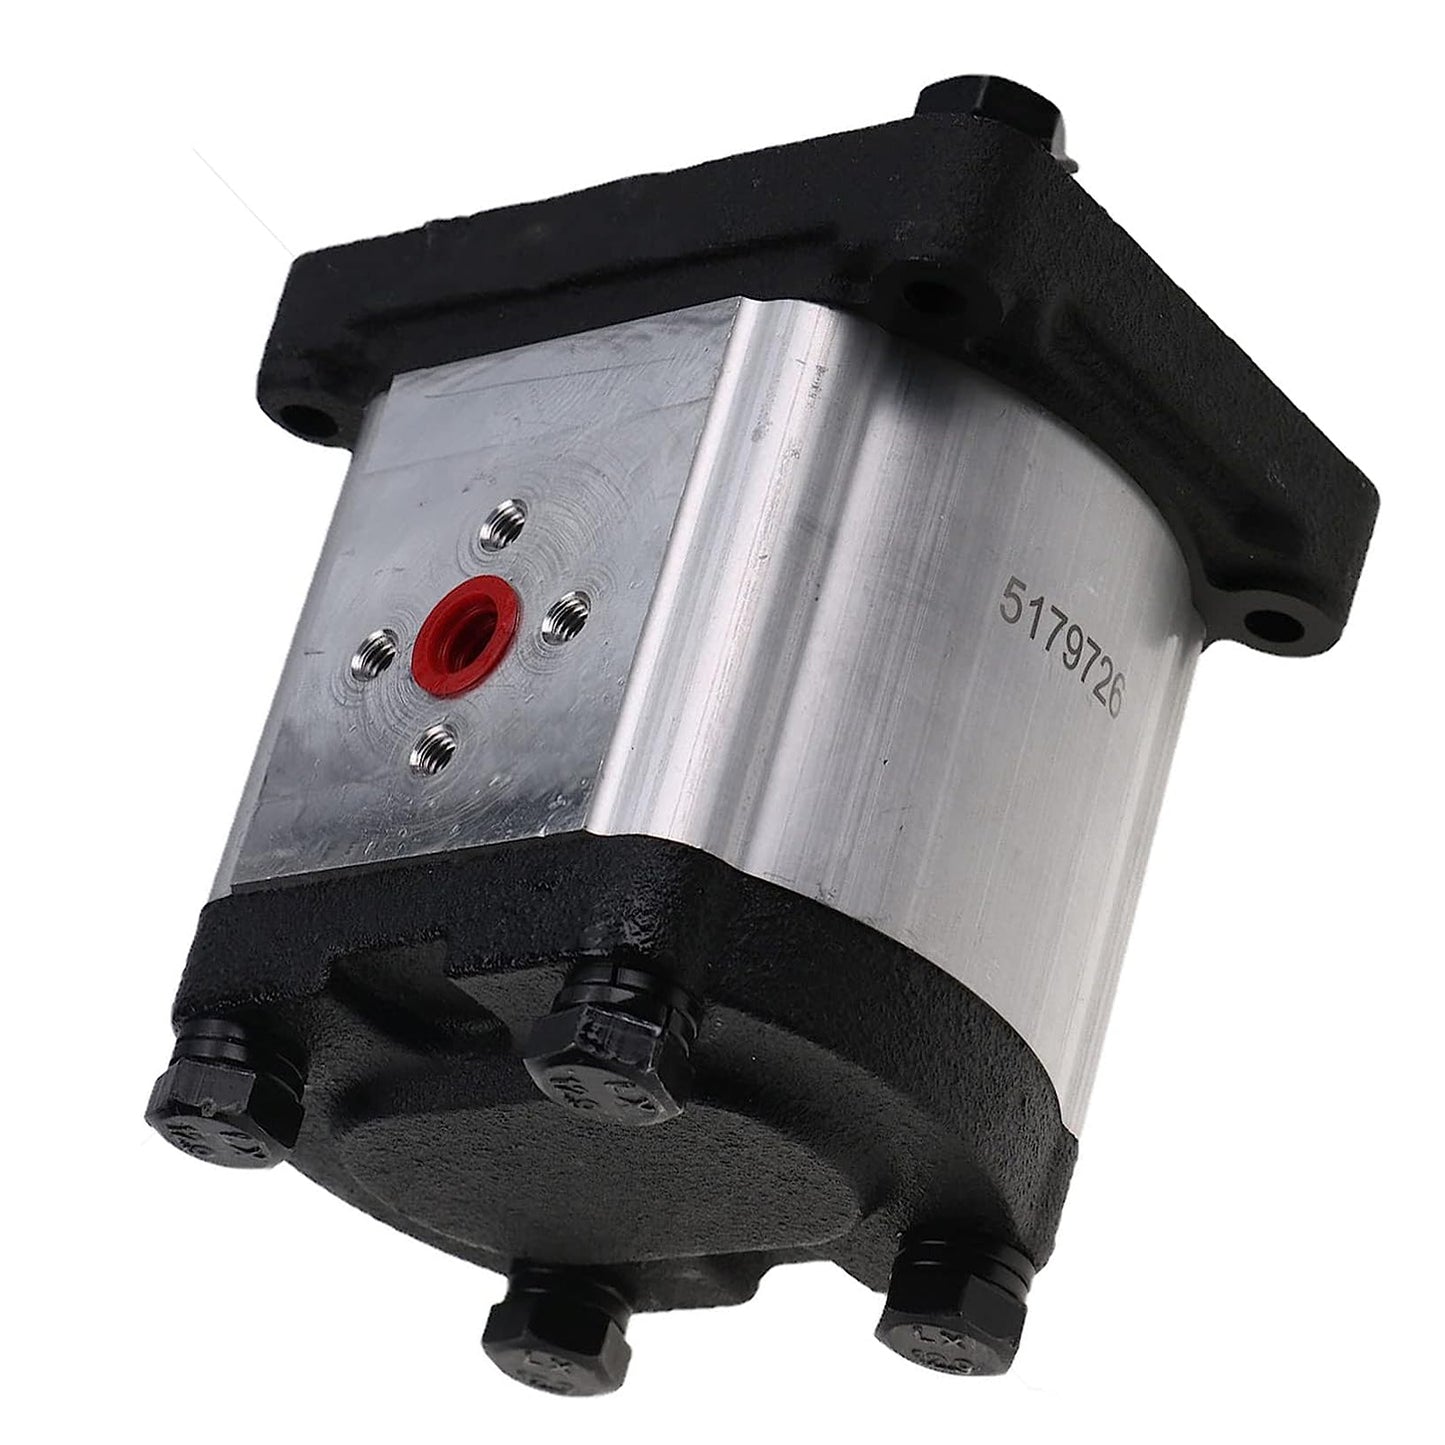 84530167 Hydraulic Pump Compatible With Case JX70U, JX80U, JX90U, JX100U, JX1060C